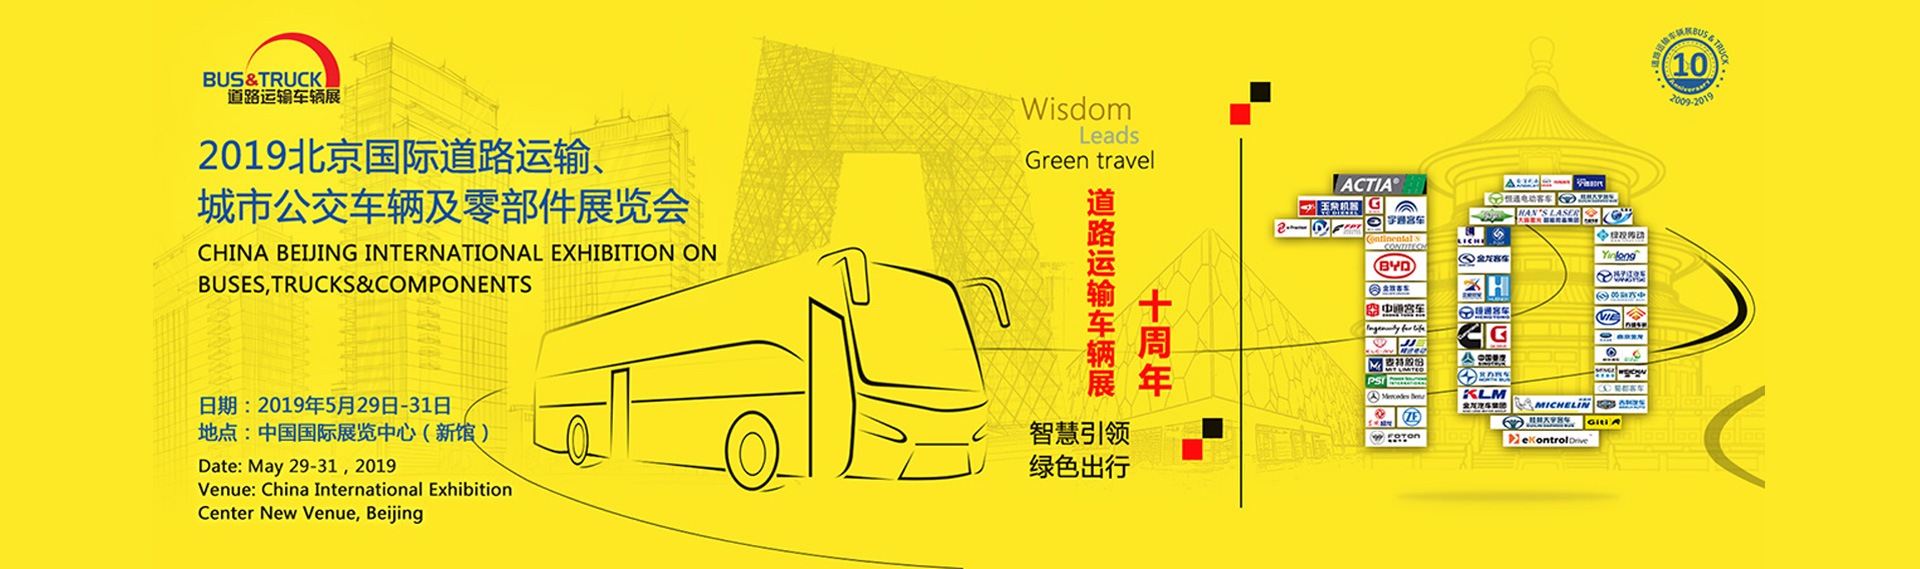 宇通客车展台 2019北京国际道路运输、城市公交车辆及零配件展览会